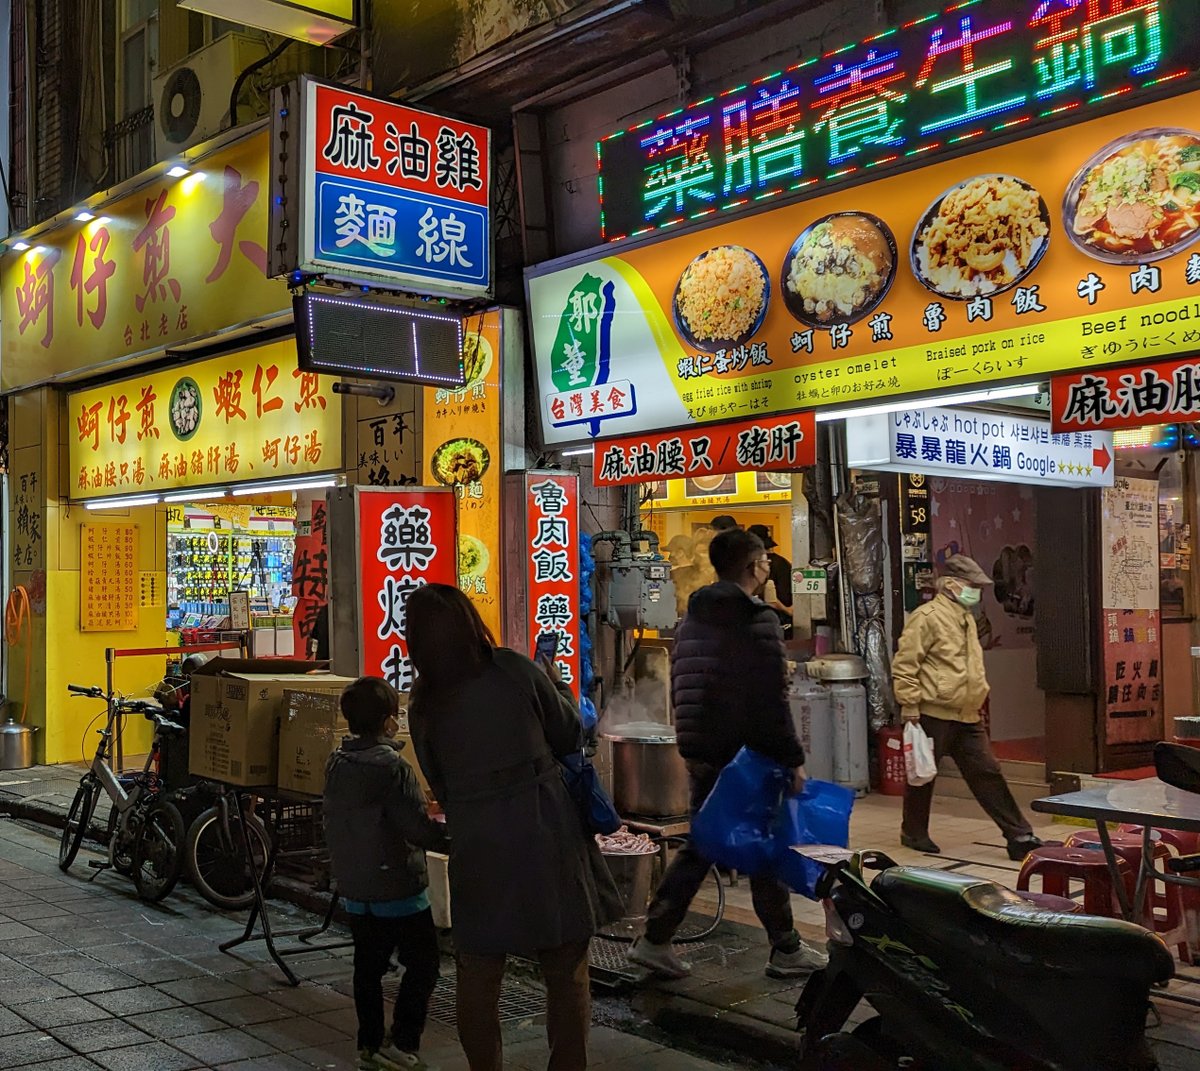 ★看影片：https://t.co/0j81nUAnsU 台北寧夏夜市 Ningxia Night Market (Taipei)